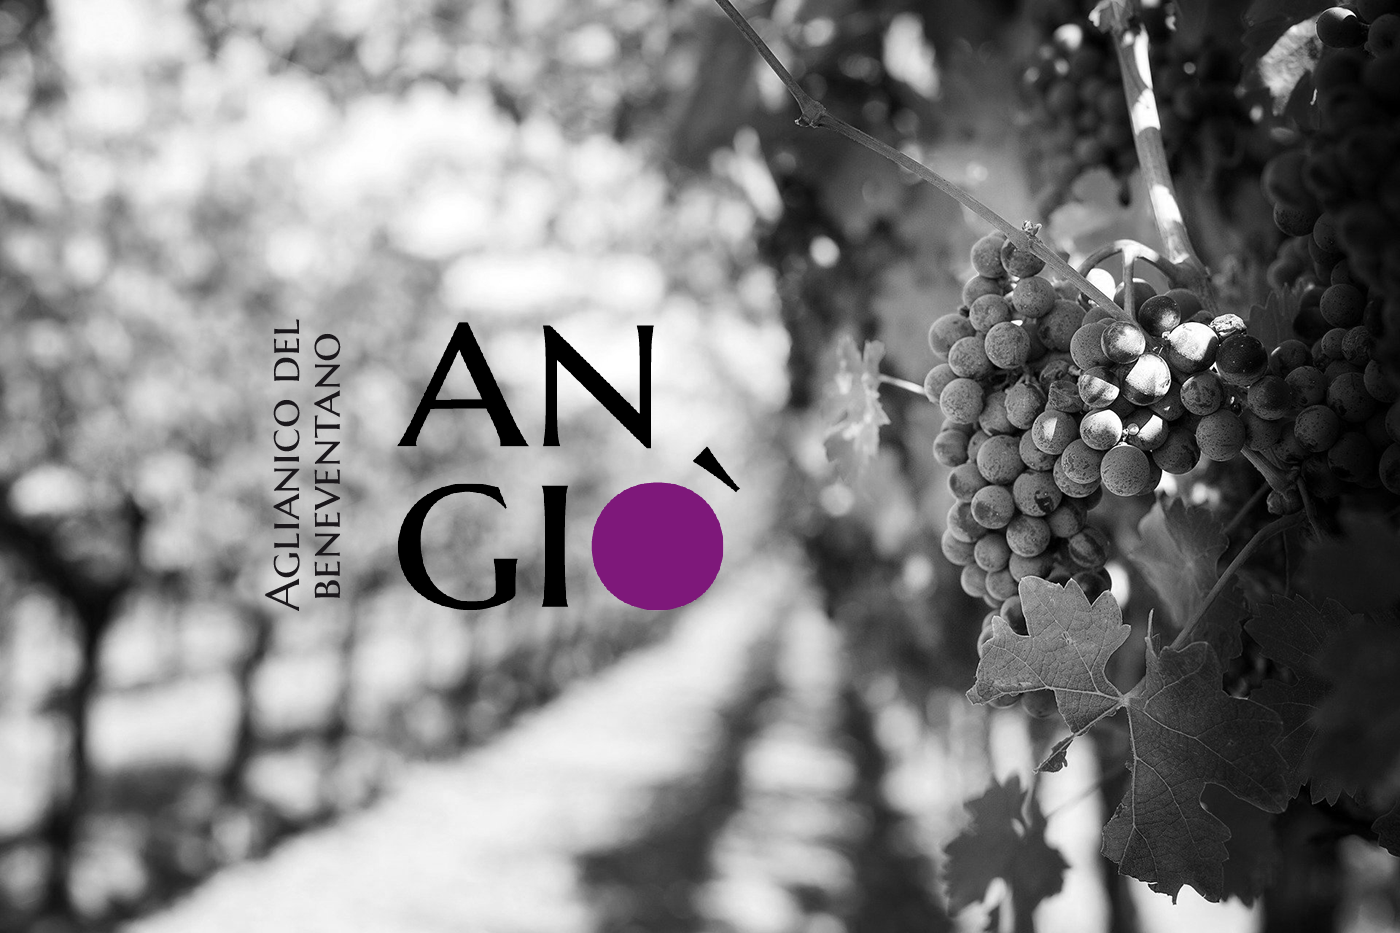 aglianico Benevento etichetta vino falanghina Label label wine logo rosato vino wine